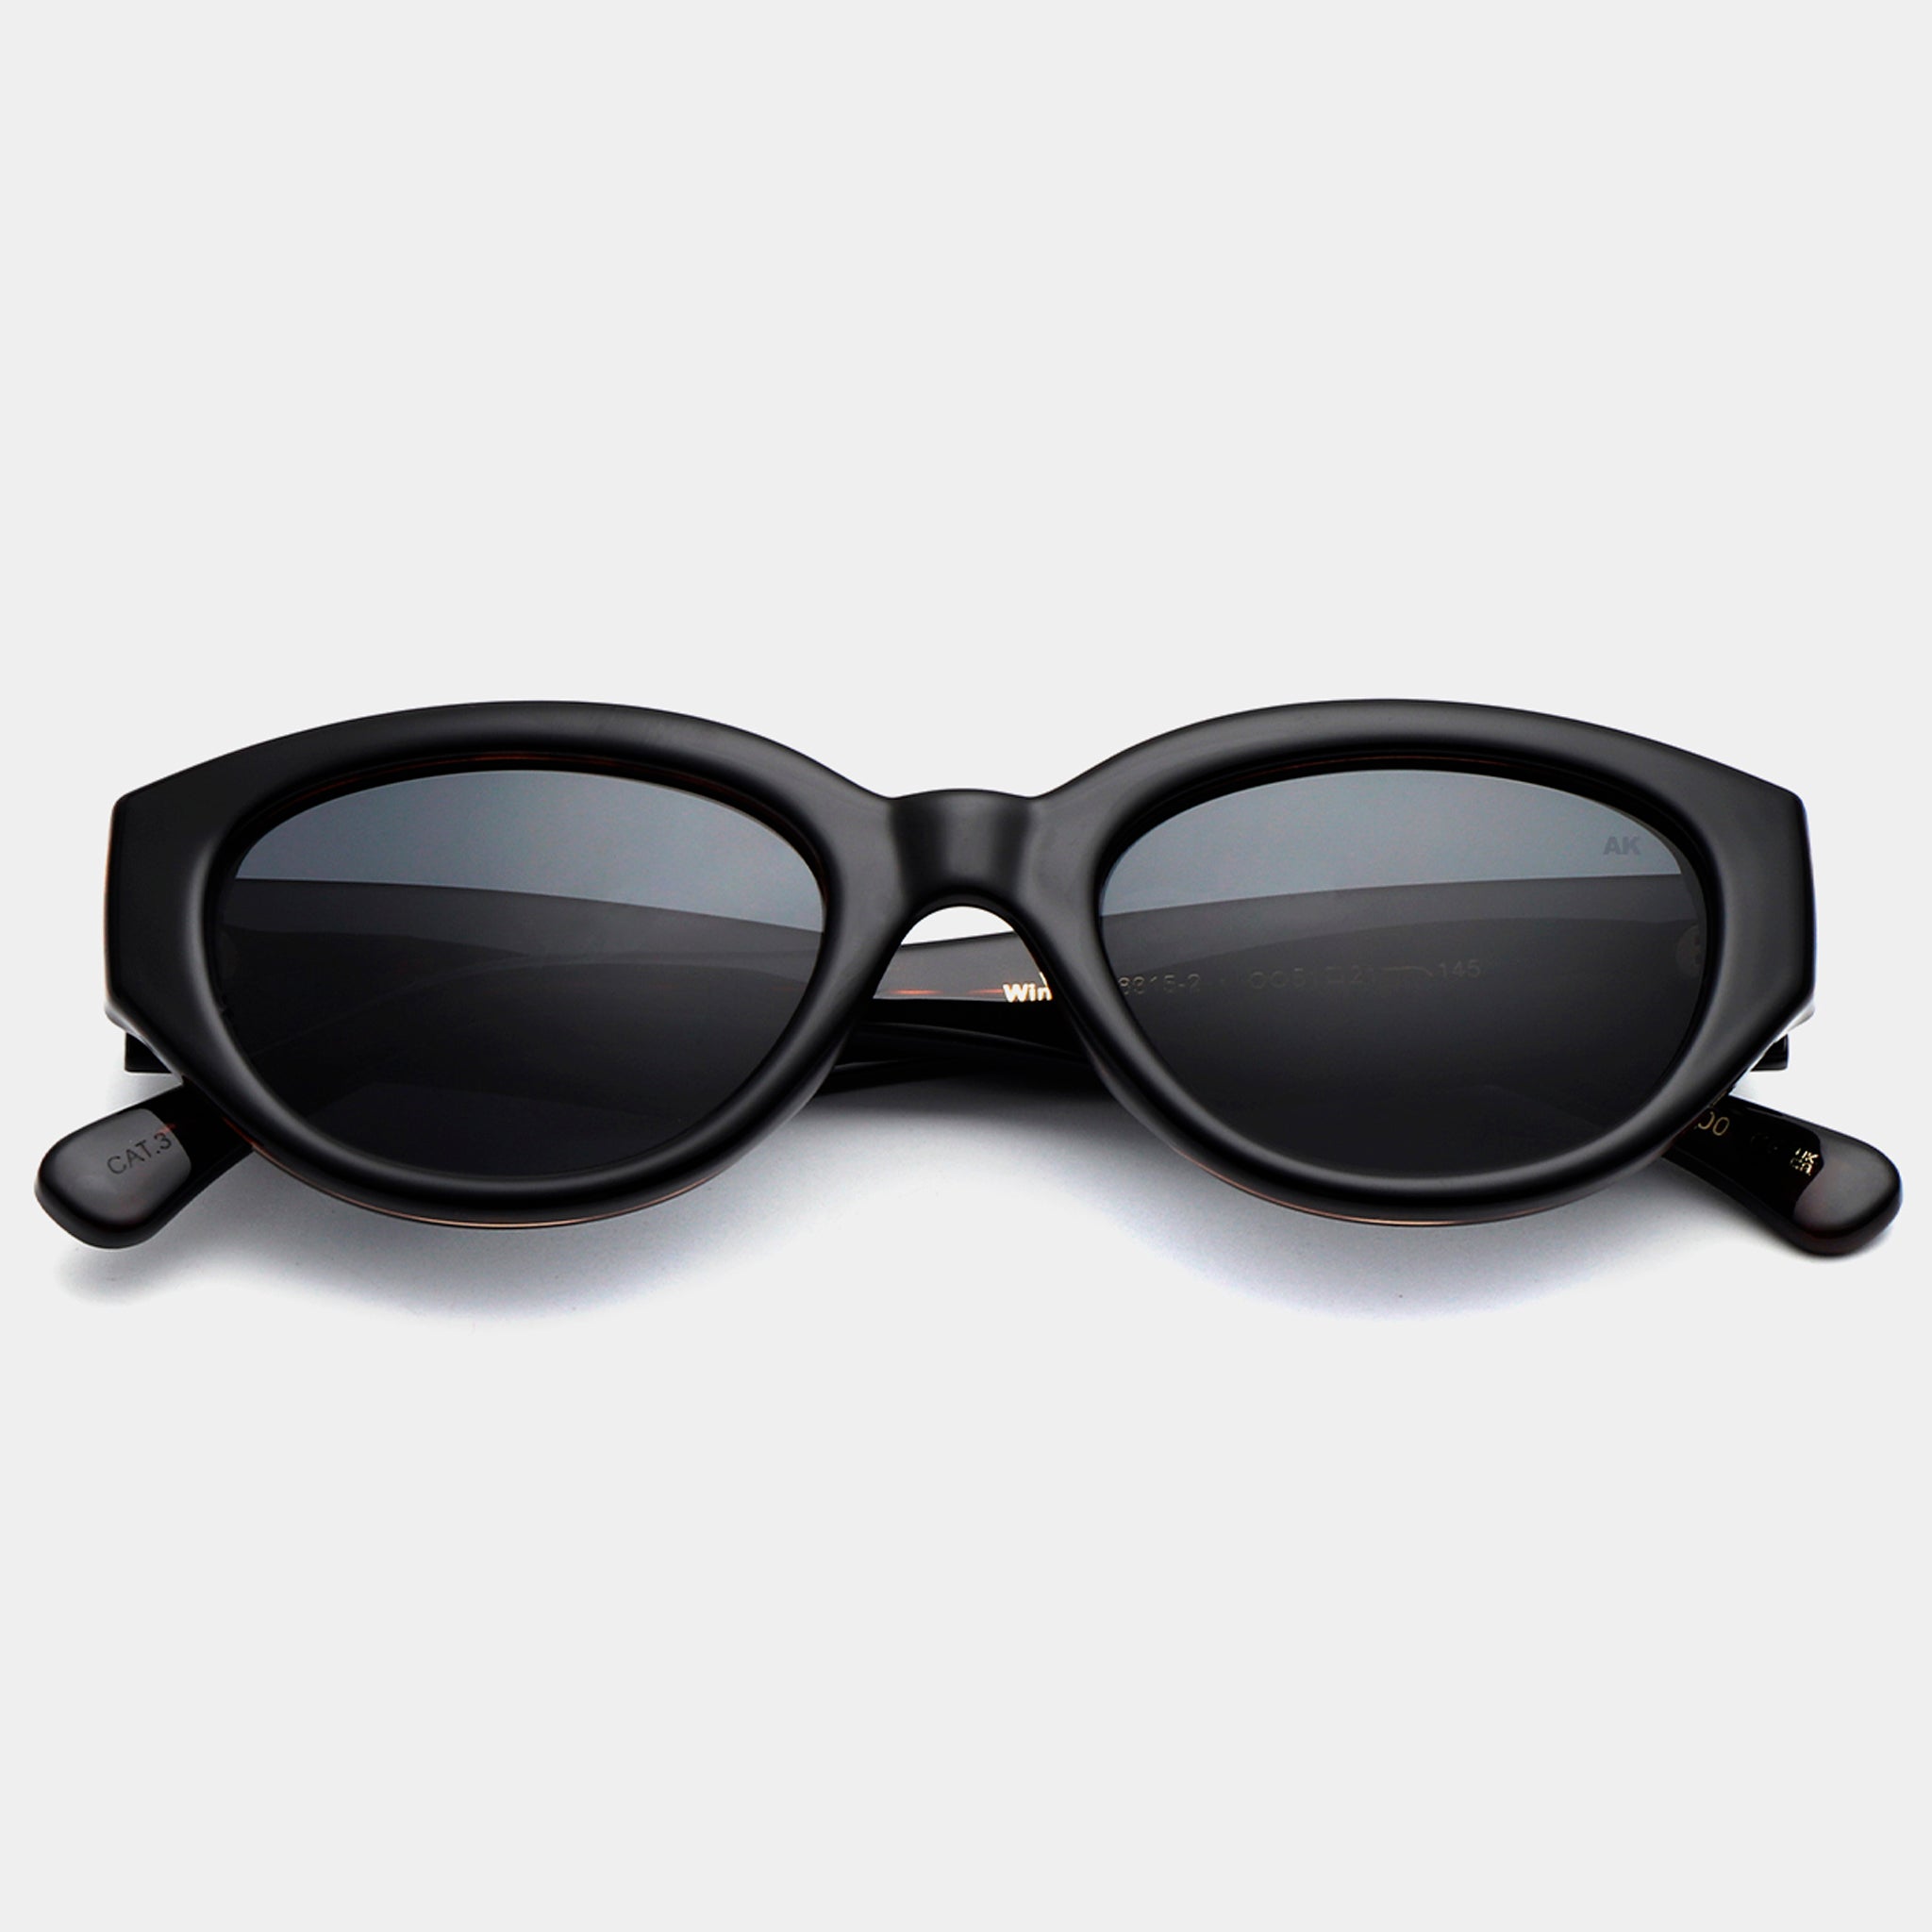 A.Kjaerbede Sunglasses - Winnie - Black